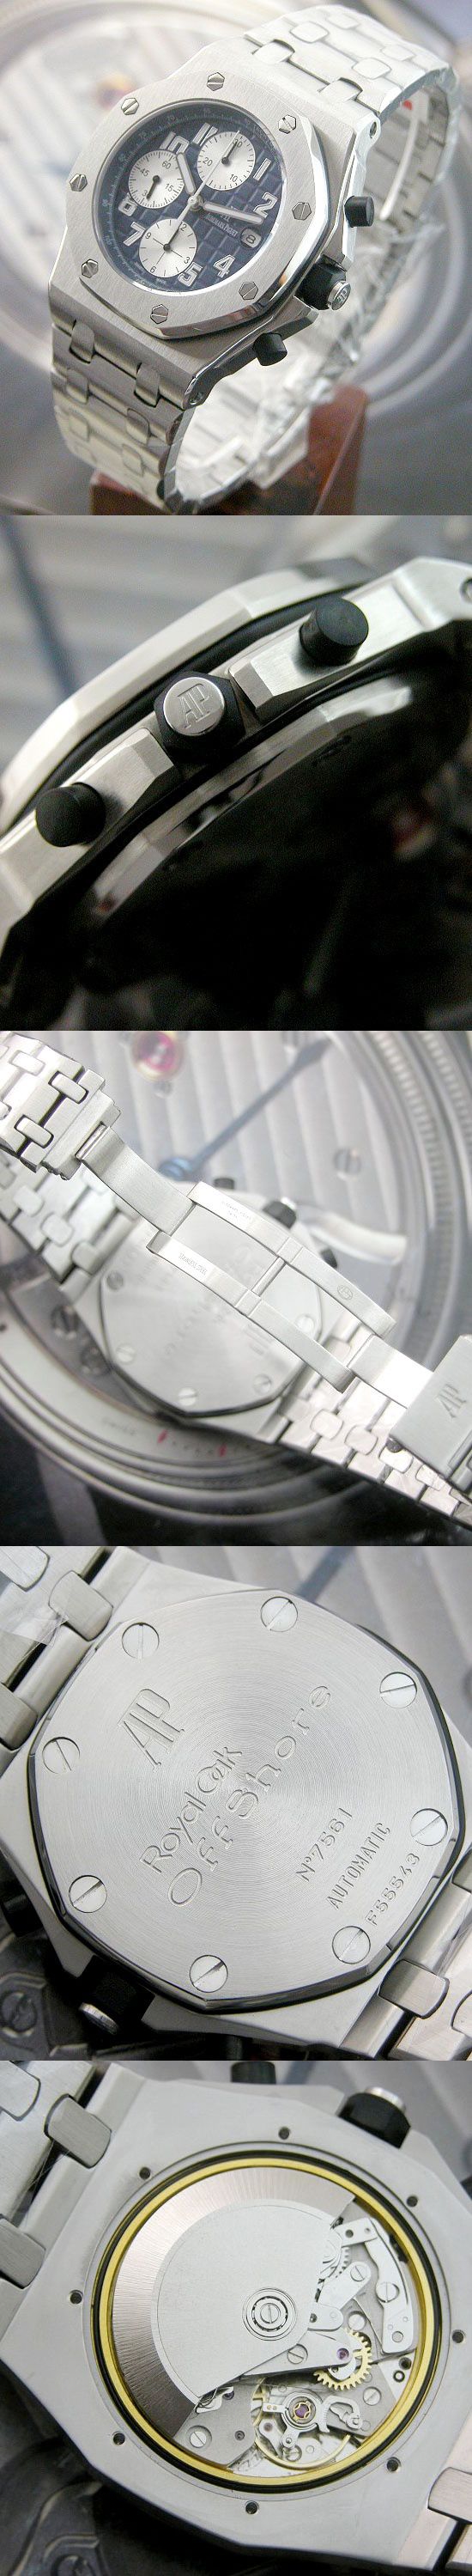 おしゃれなブランド時計がオーデマピゲ-ロイヤルオ-オフショアクロノーク-AUDEMARS PIGUET-25721ST.OO. 1000ST.09-男性用を提供します.